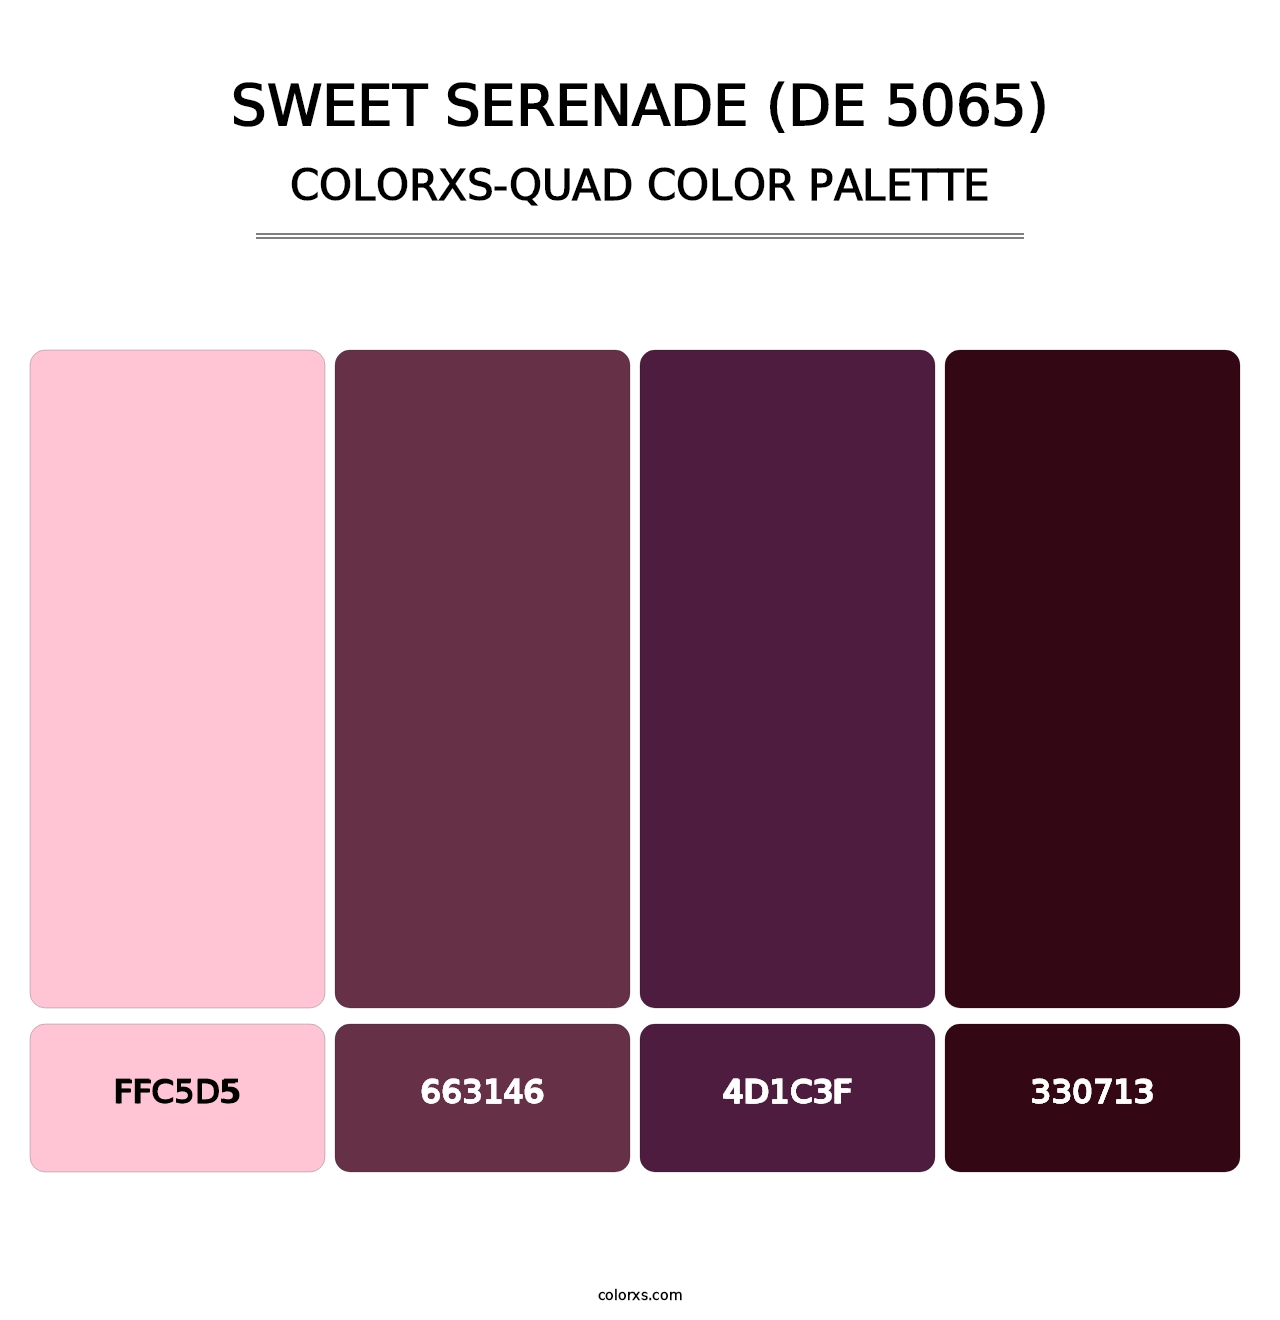 Sweet Serenade (DE 5065) - Colorxs Quad Palette